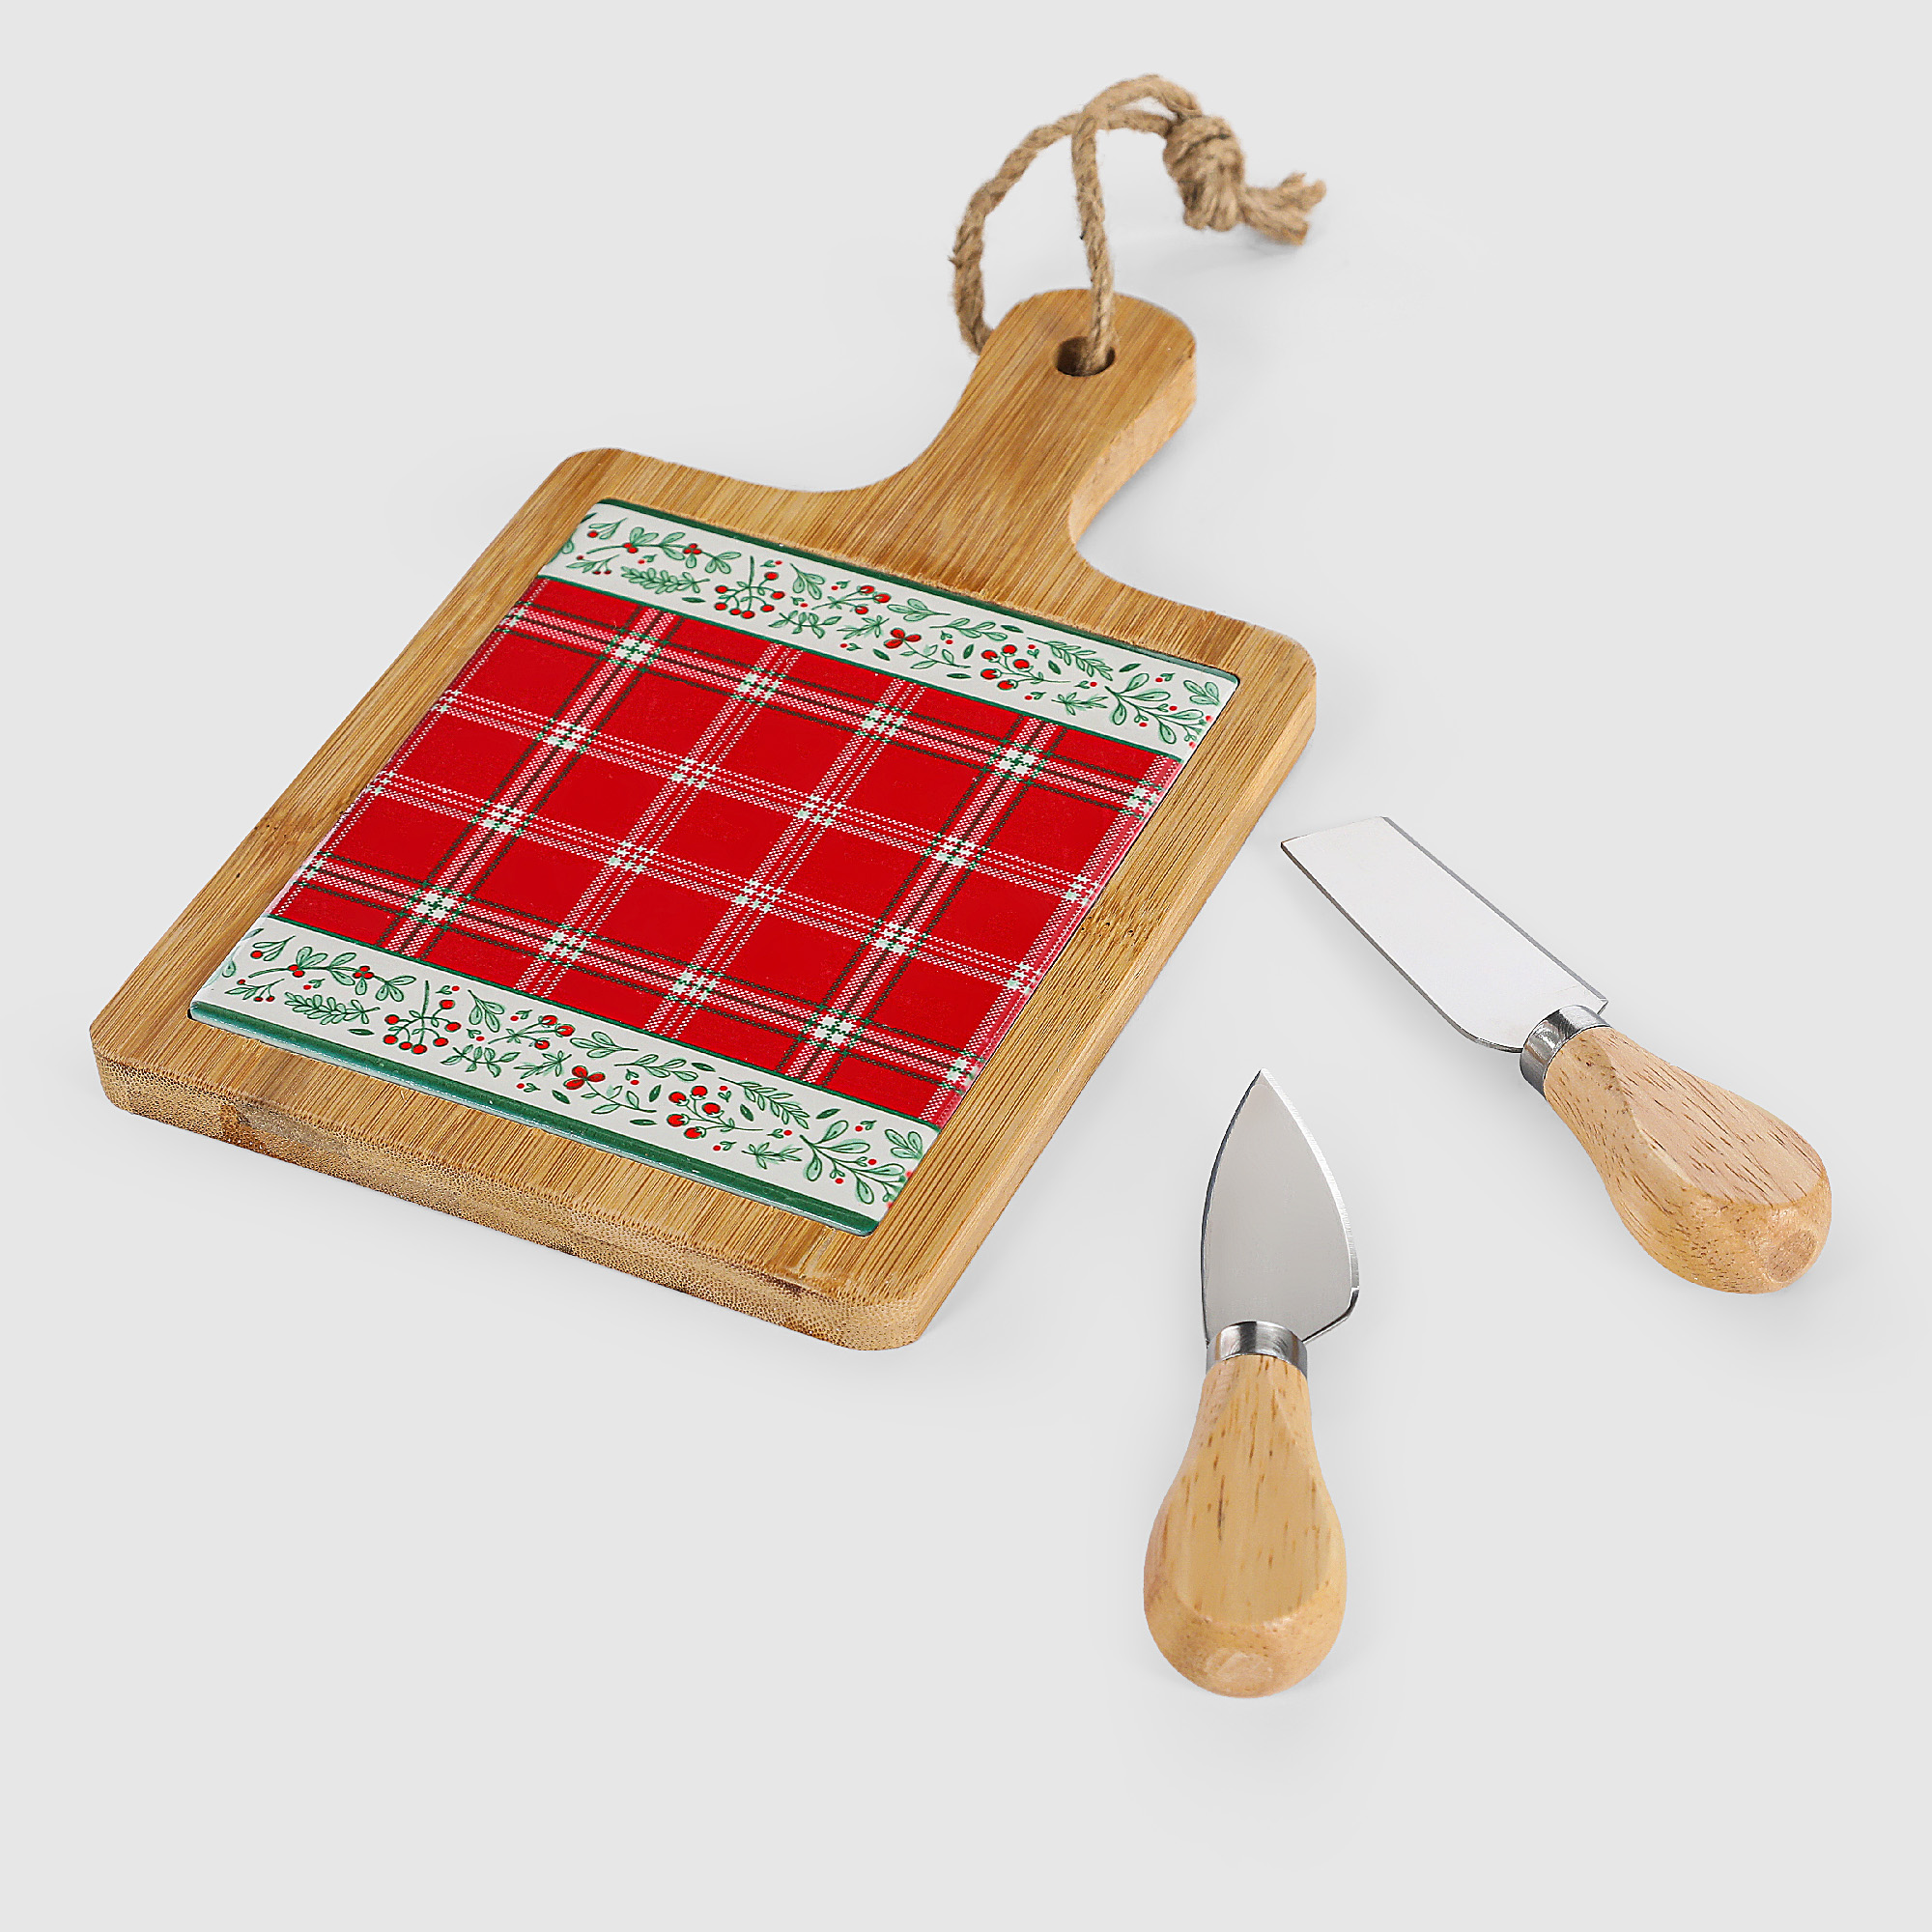 Доска разделочная с ножами Mercury Tableware-64307 24х15 см в ассортименте, цвет натуральное дерево, красный, зеленый - фото 2